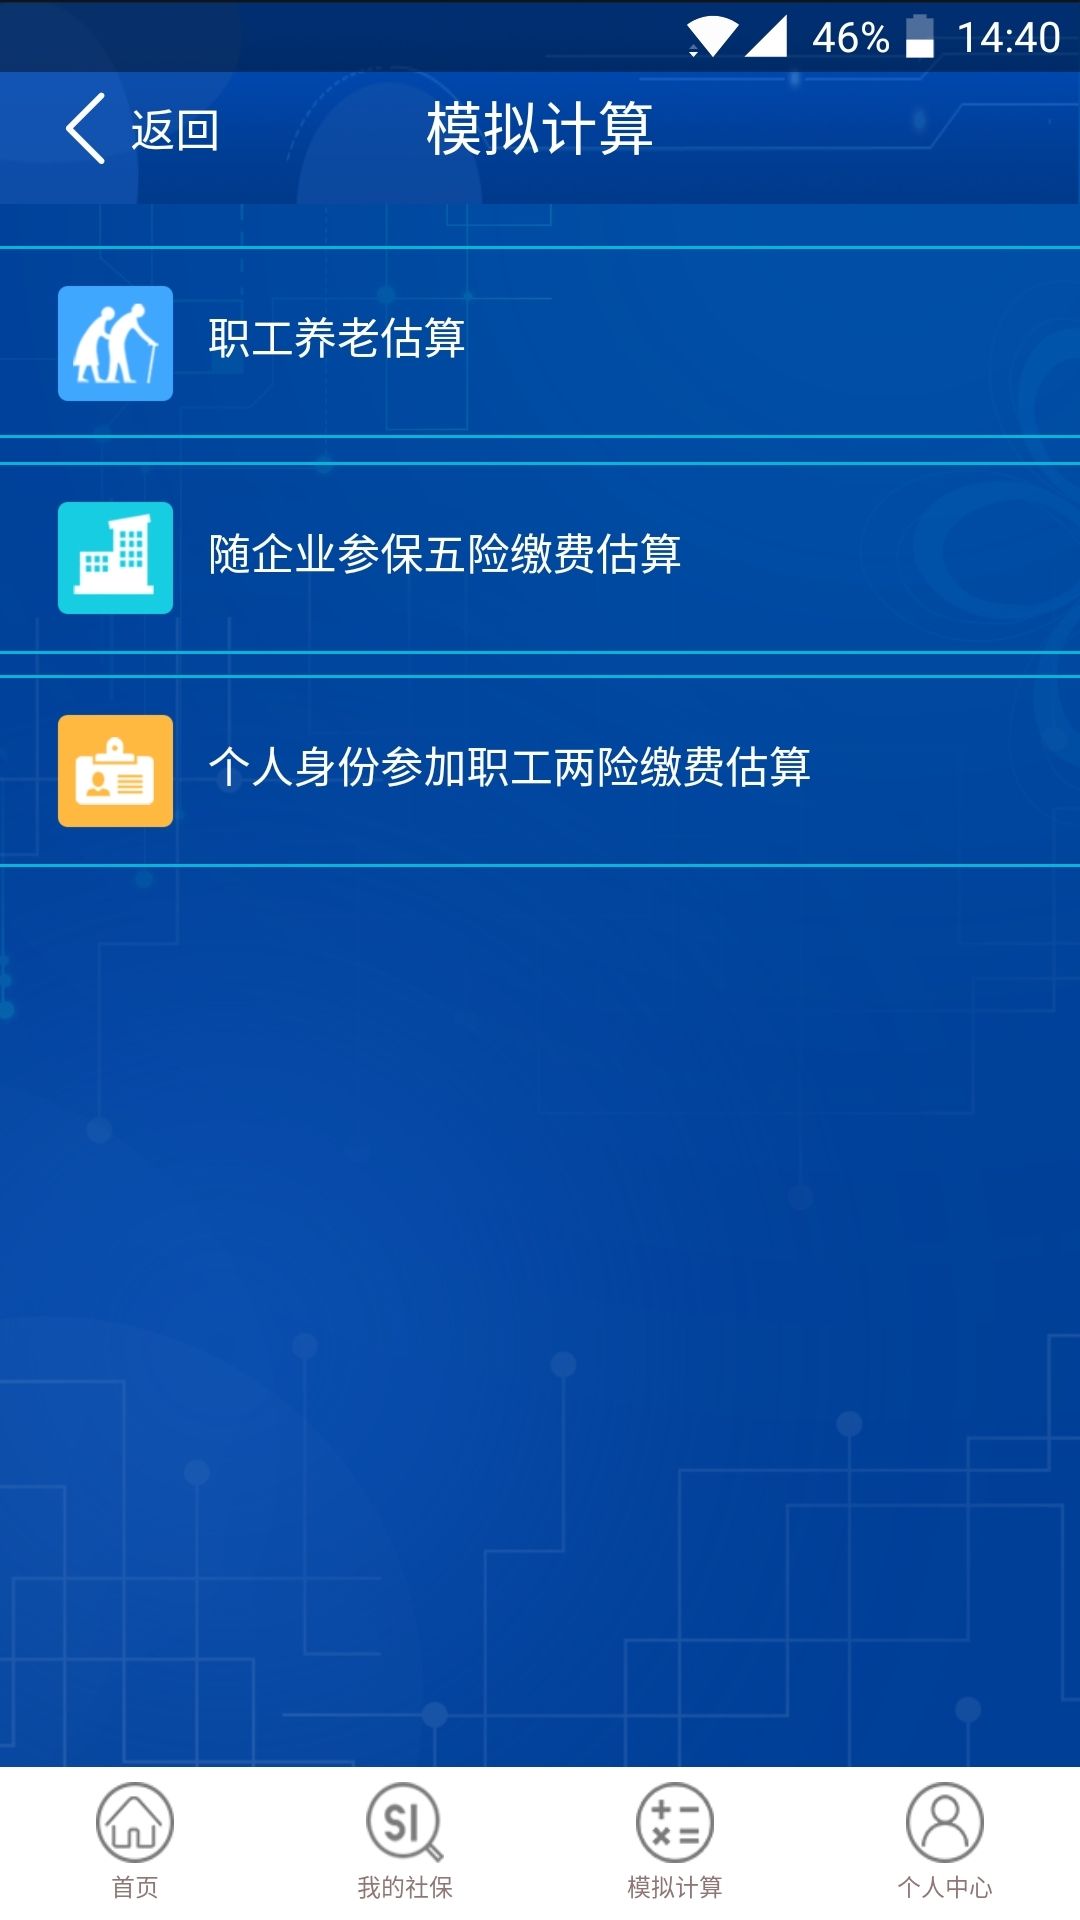 重庆社保查询个人账户网上查询登录入口0.0.5